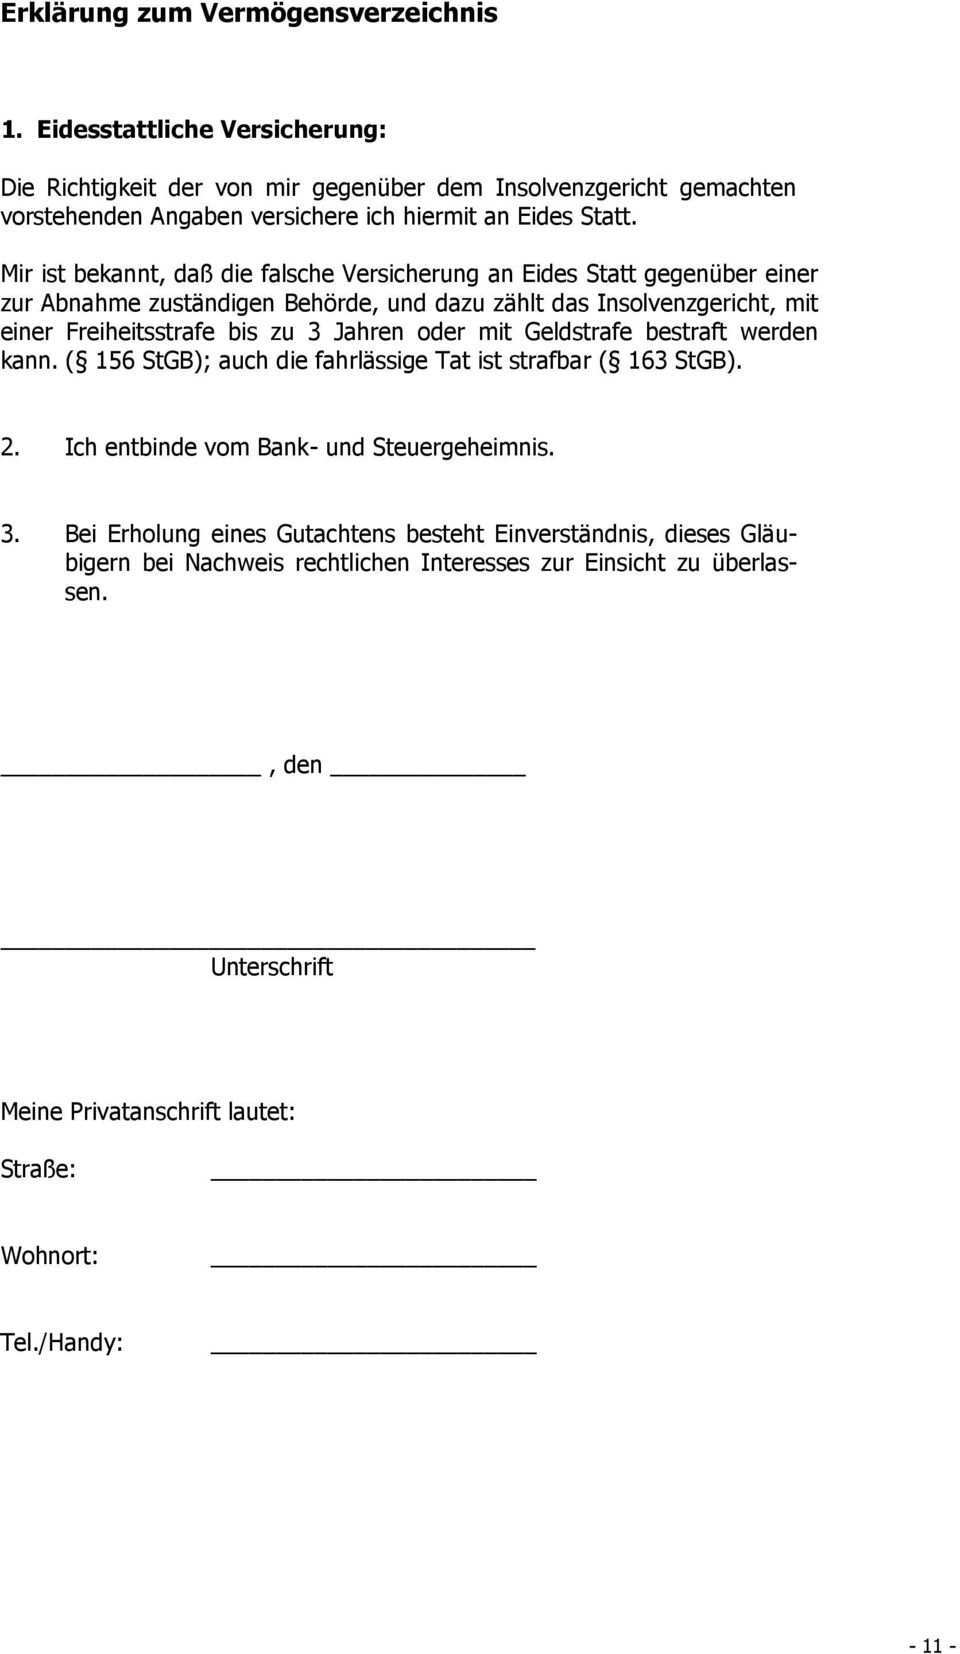 Vermogensverzeichnis Zur Vorlage Beim Insolvenzgericht Munchen Pdf Free Download